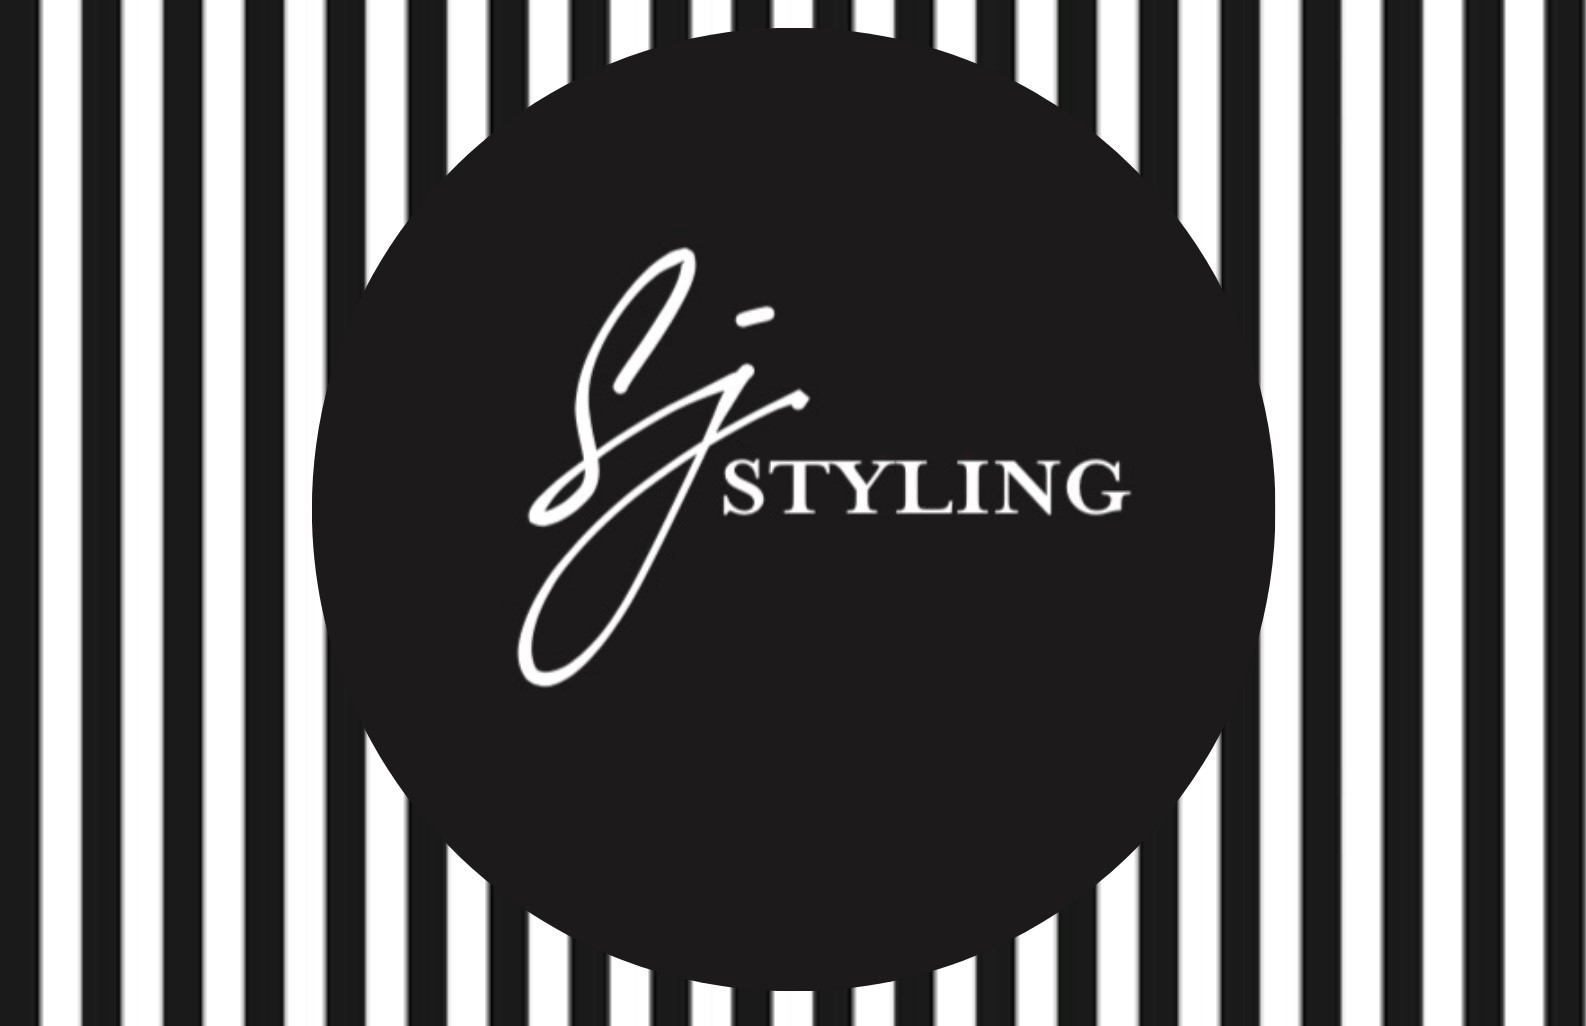 SJ Styling